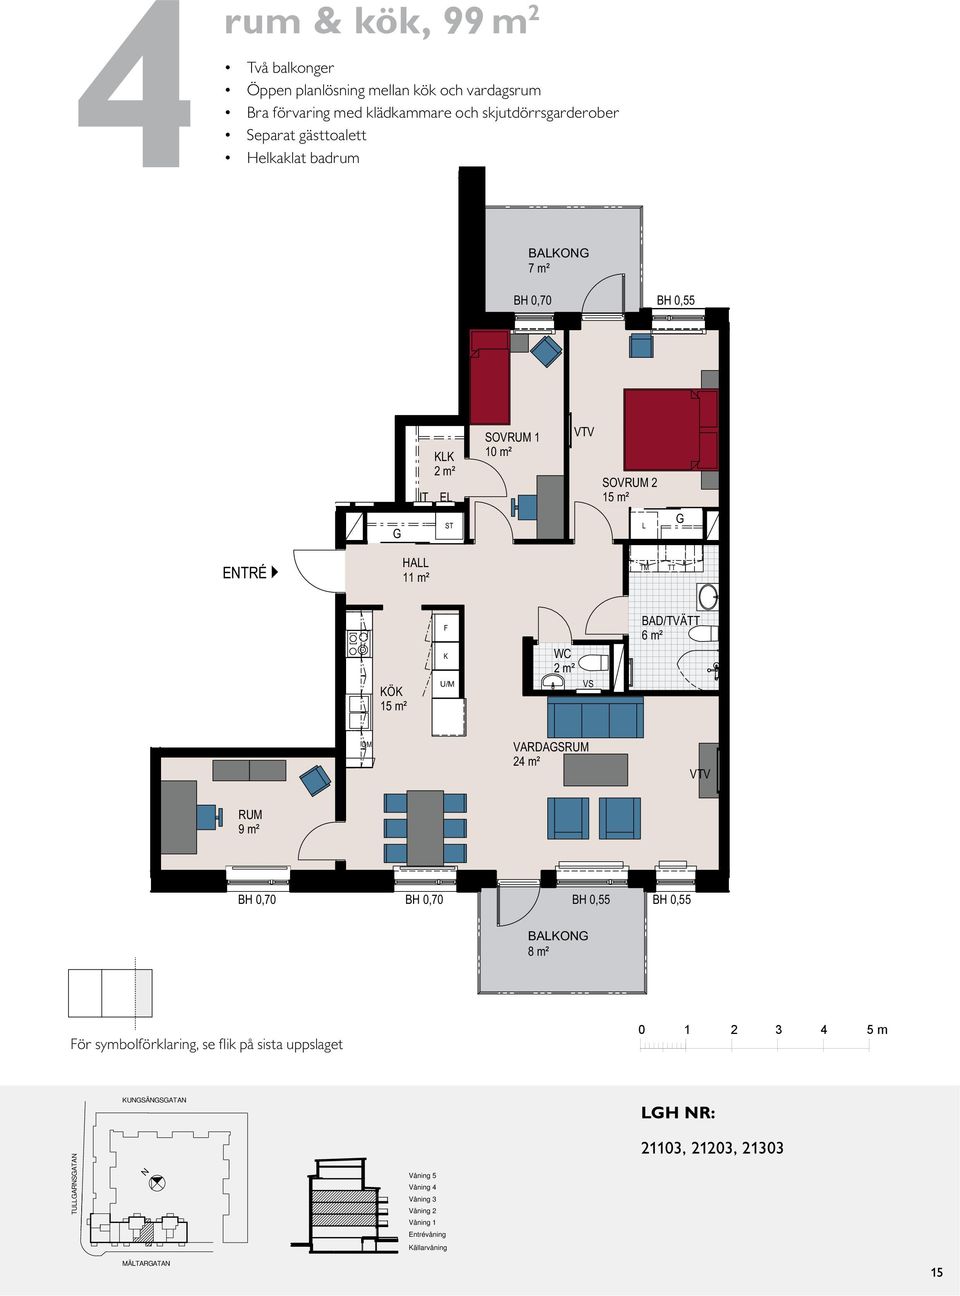 VARDASRUM 18 m² 13 m² 6 m² 3 m² E IT IT 2 m² E 10 m² ETRÉ 11 m² 2 m² VS /TVÄ 6 m² VARDASRUM 24 m² RUM 9 m² 8